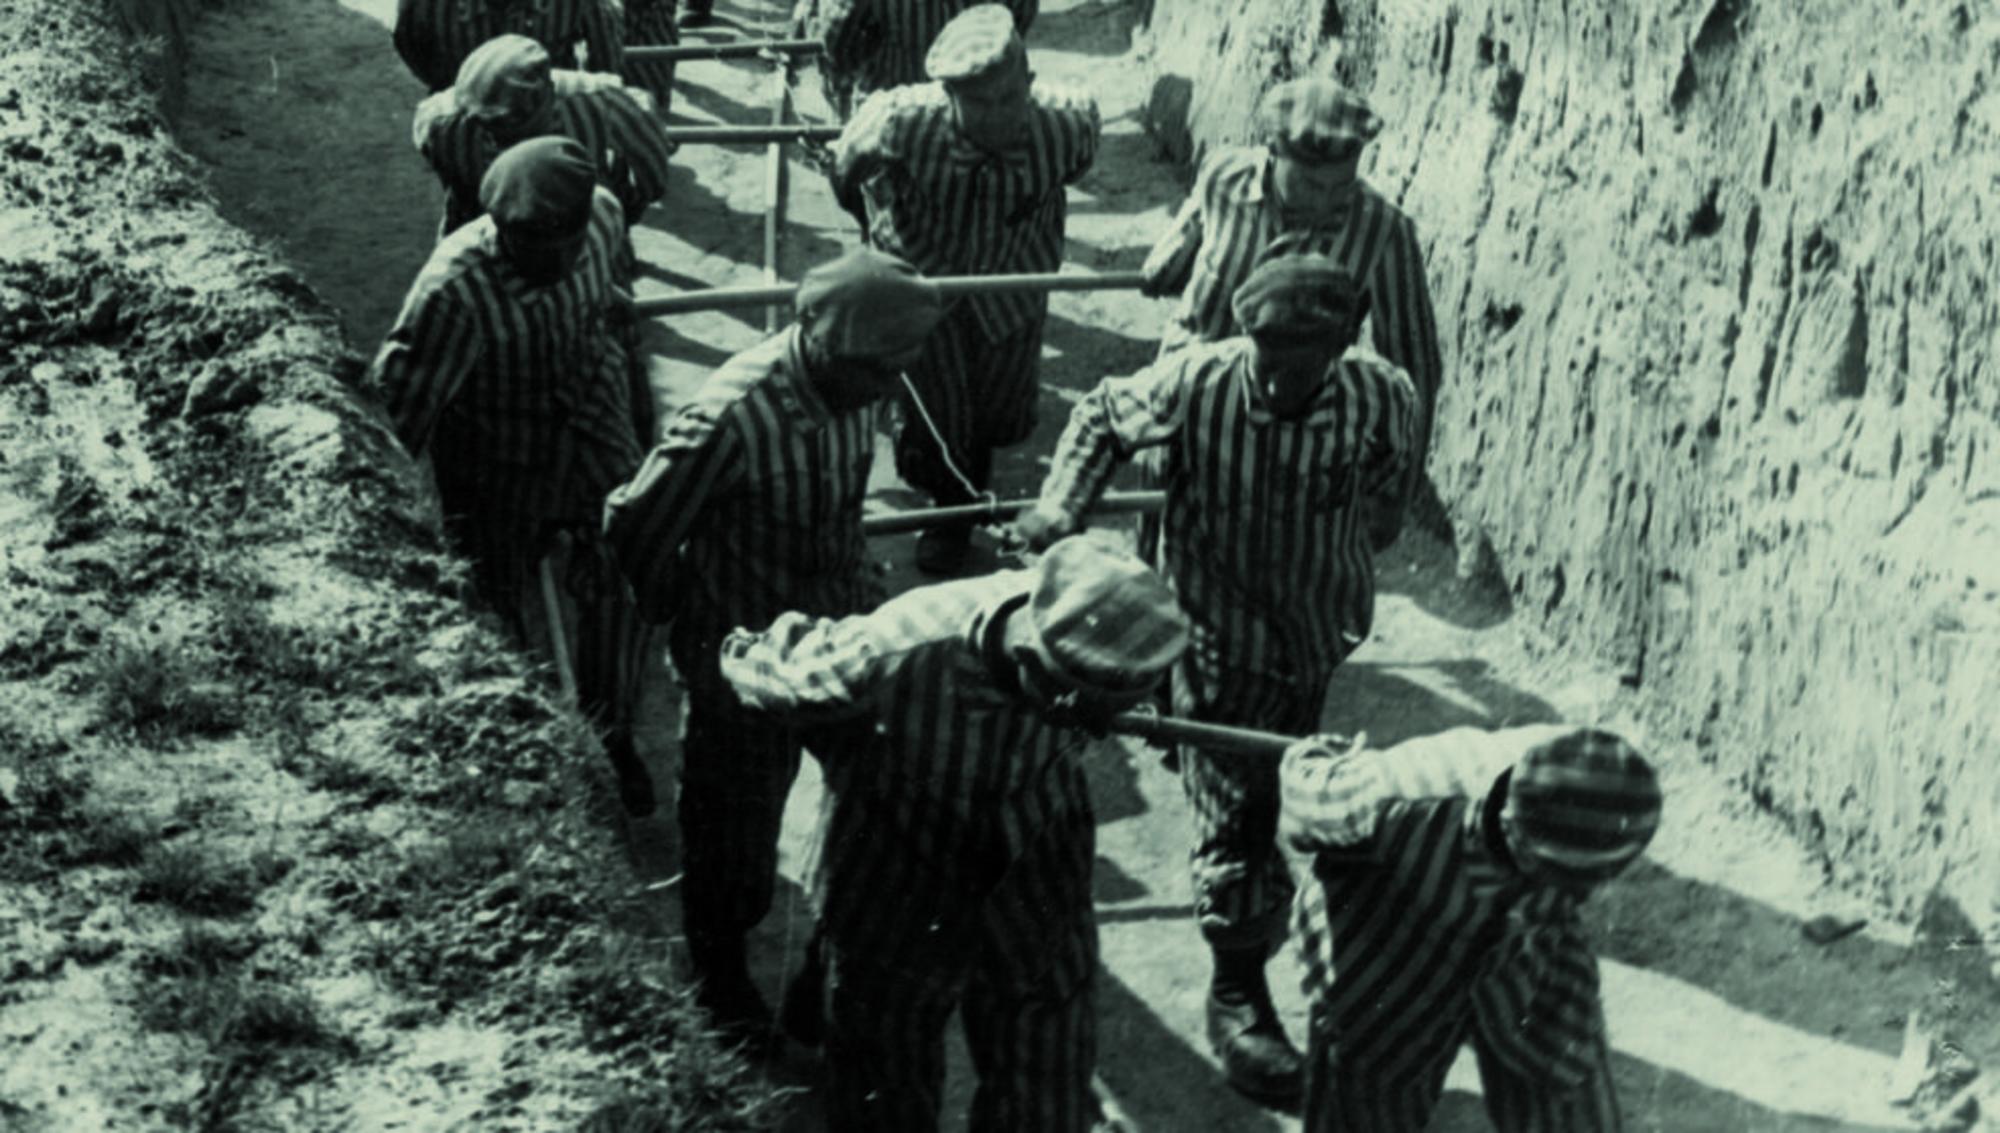 Presos republicanos traballando nos campos de concentración nazis. Foto do arquivo de Francesc Boix, que se usou nos xuízos de Nuremberg